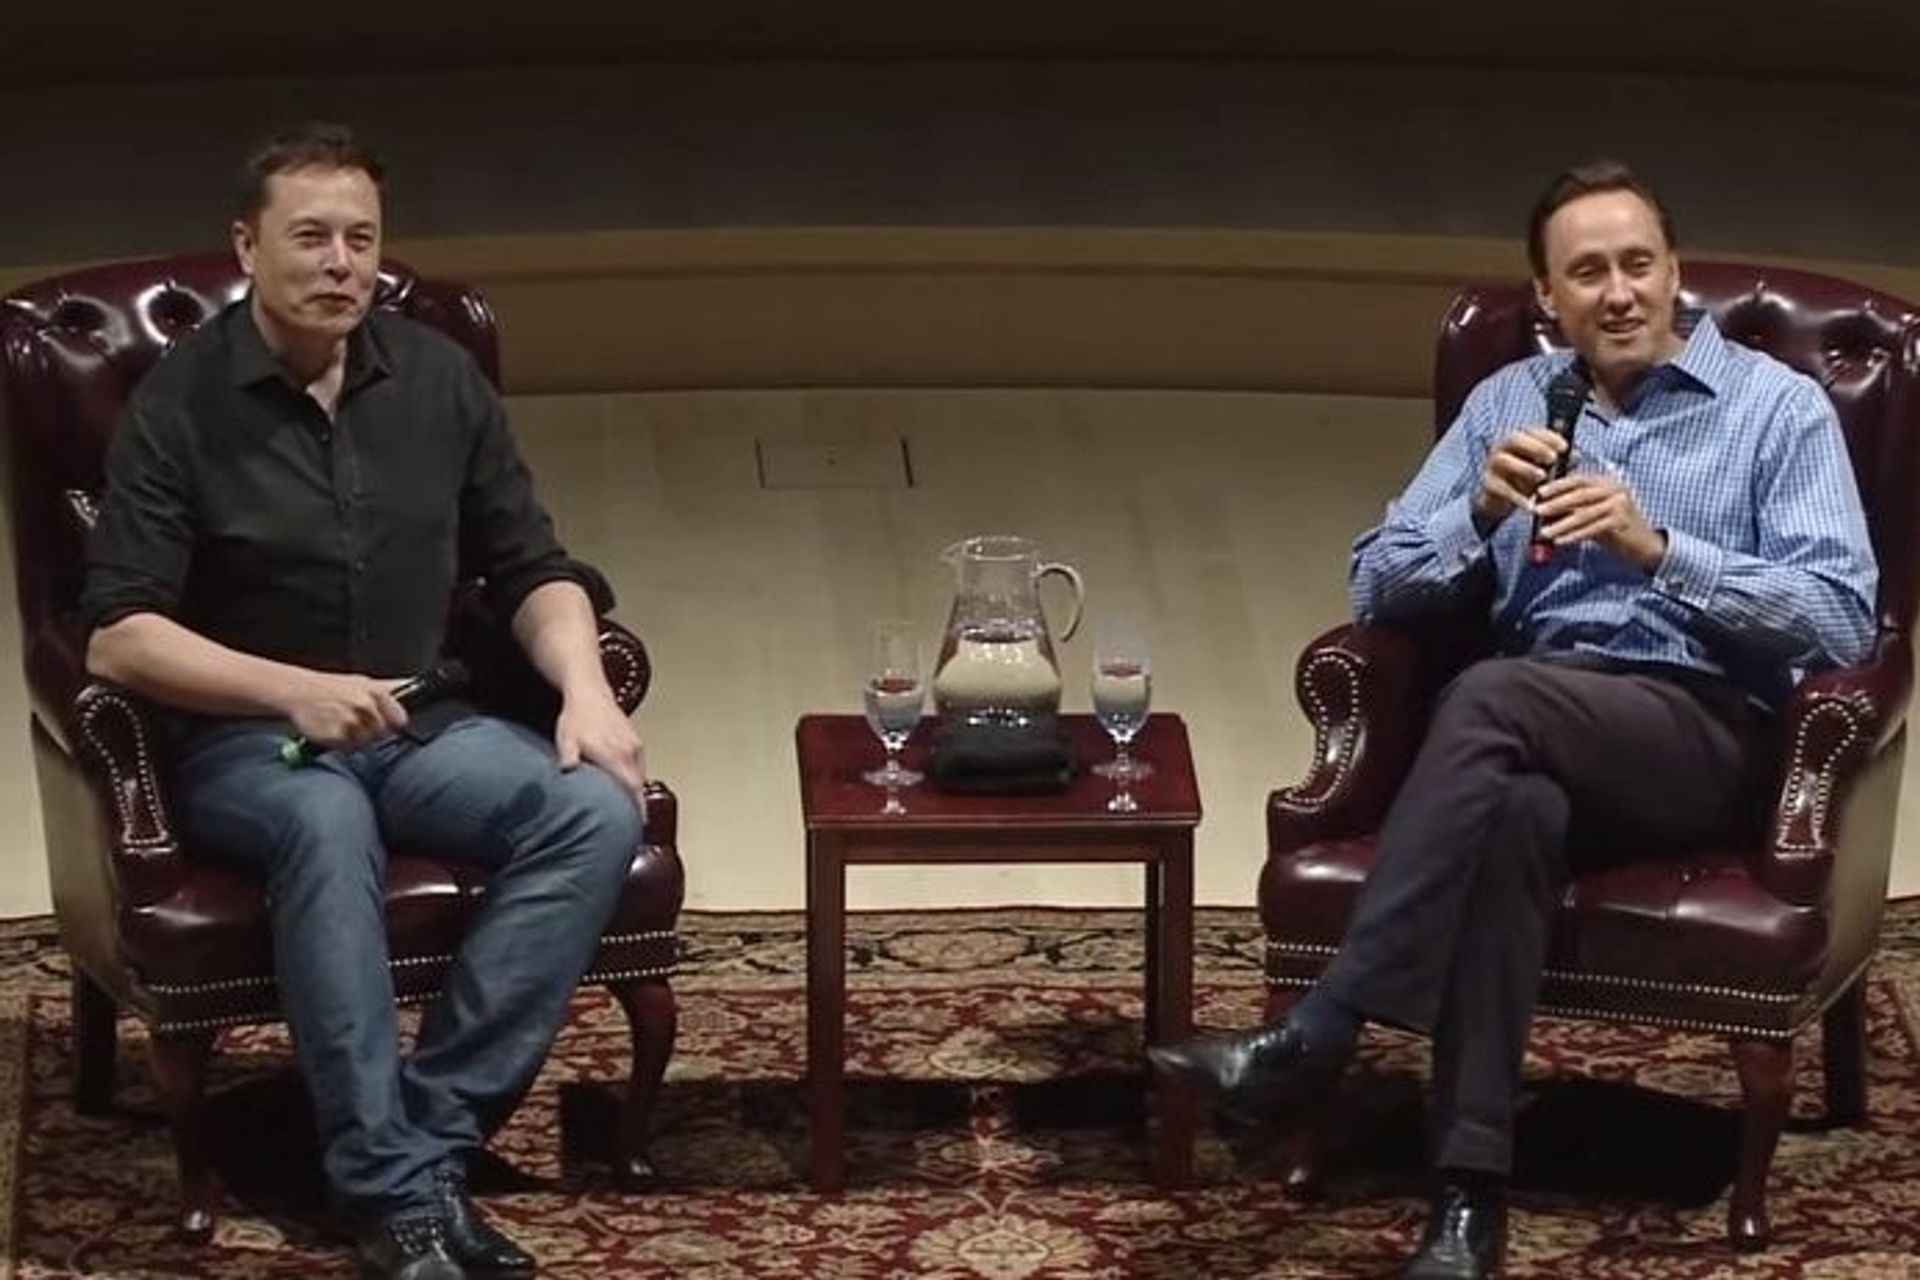 Conversa entre o empreendedor visionário Elon Musk e o famoso investidor Steve Jurvetson